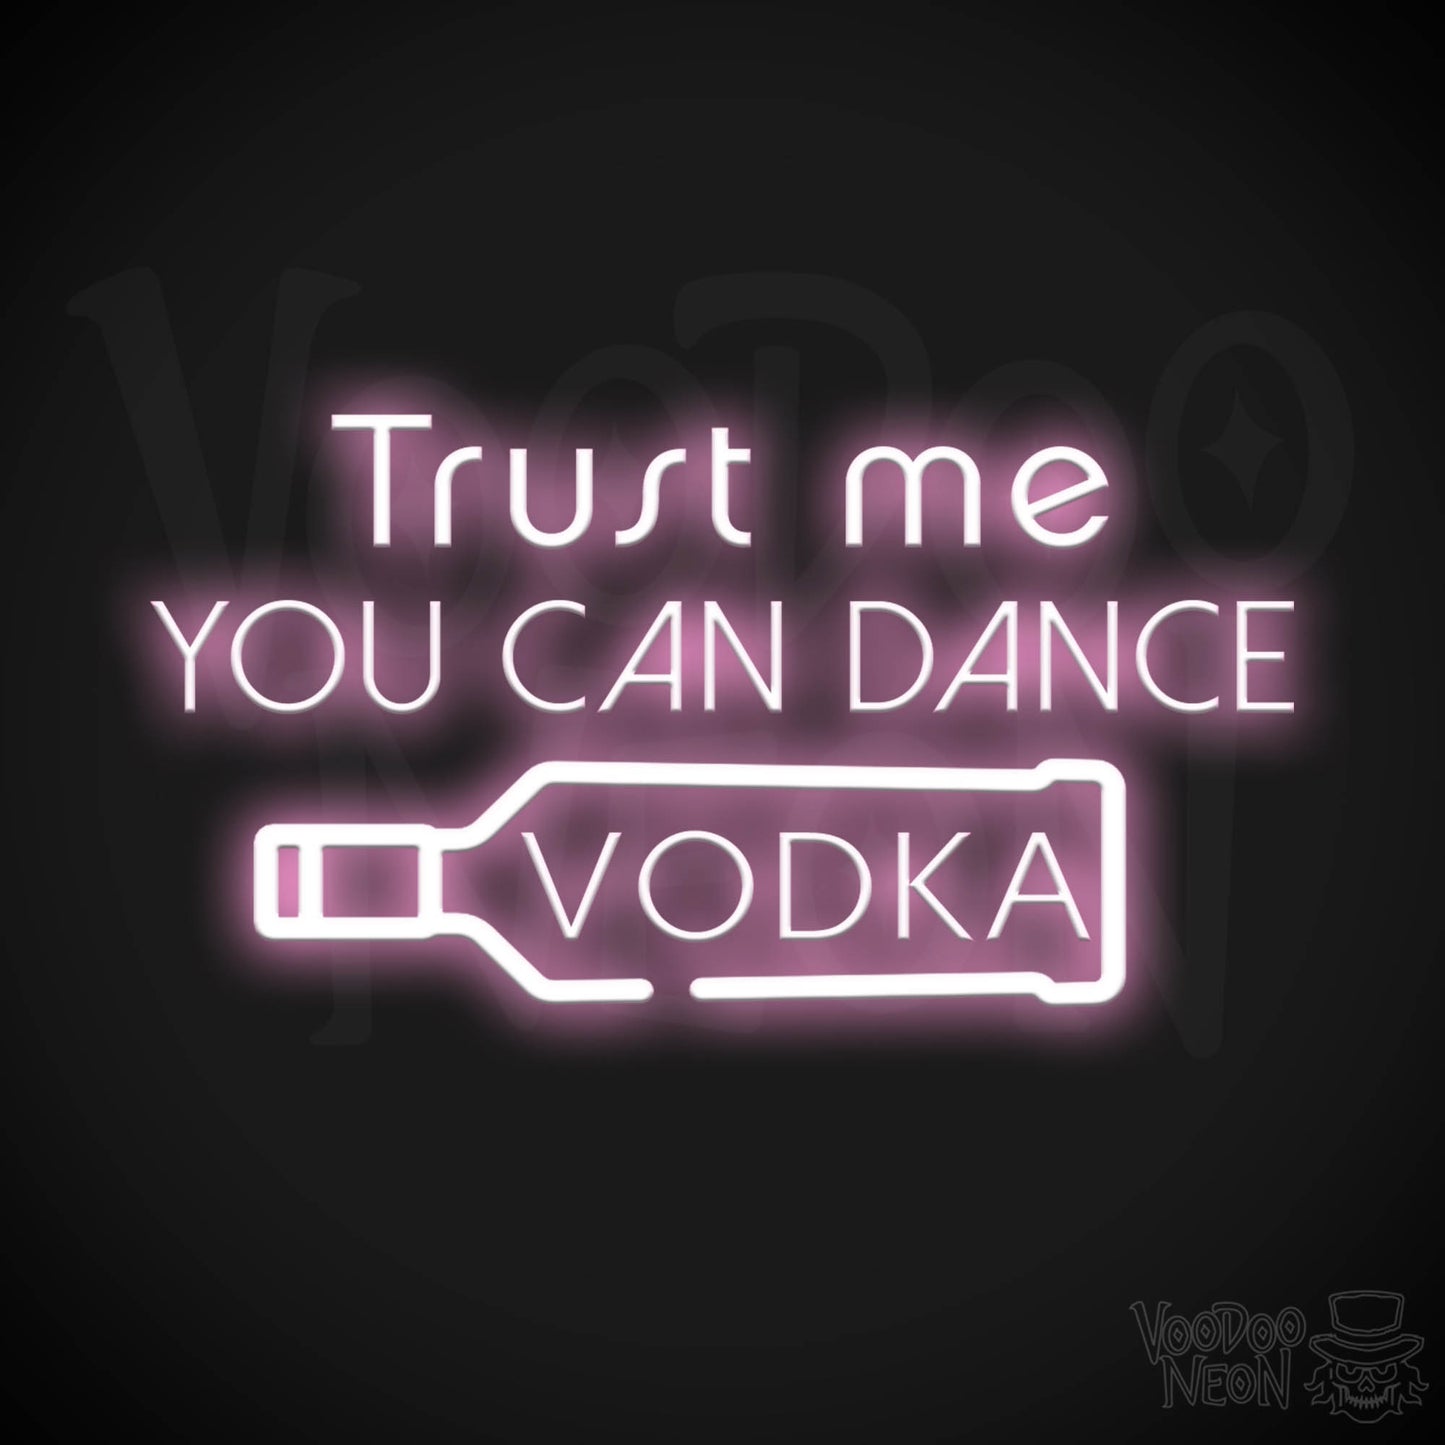 Trust Me You Can Dance Vodka Neon Sign - Vodka Bar Sign - LED Signs - Color Light Pink